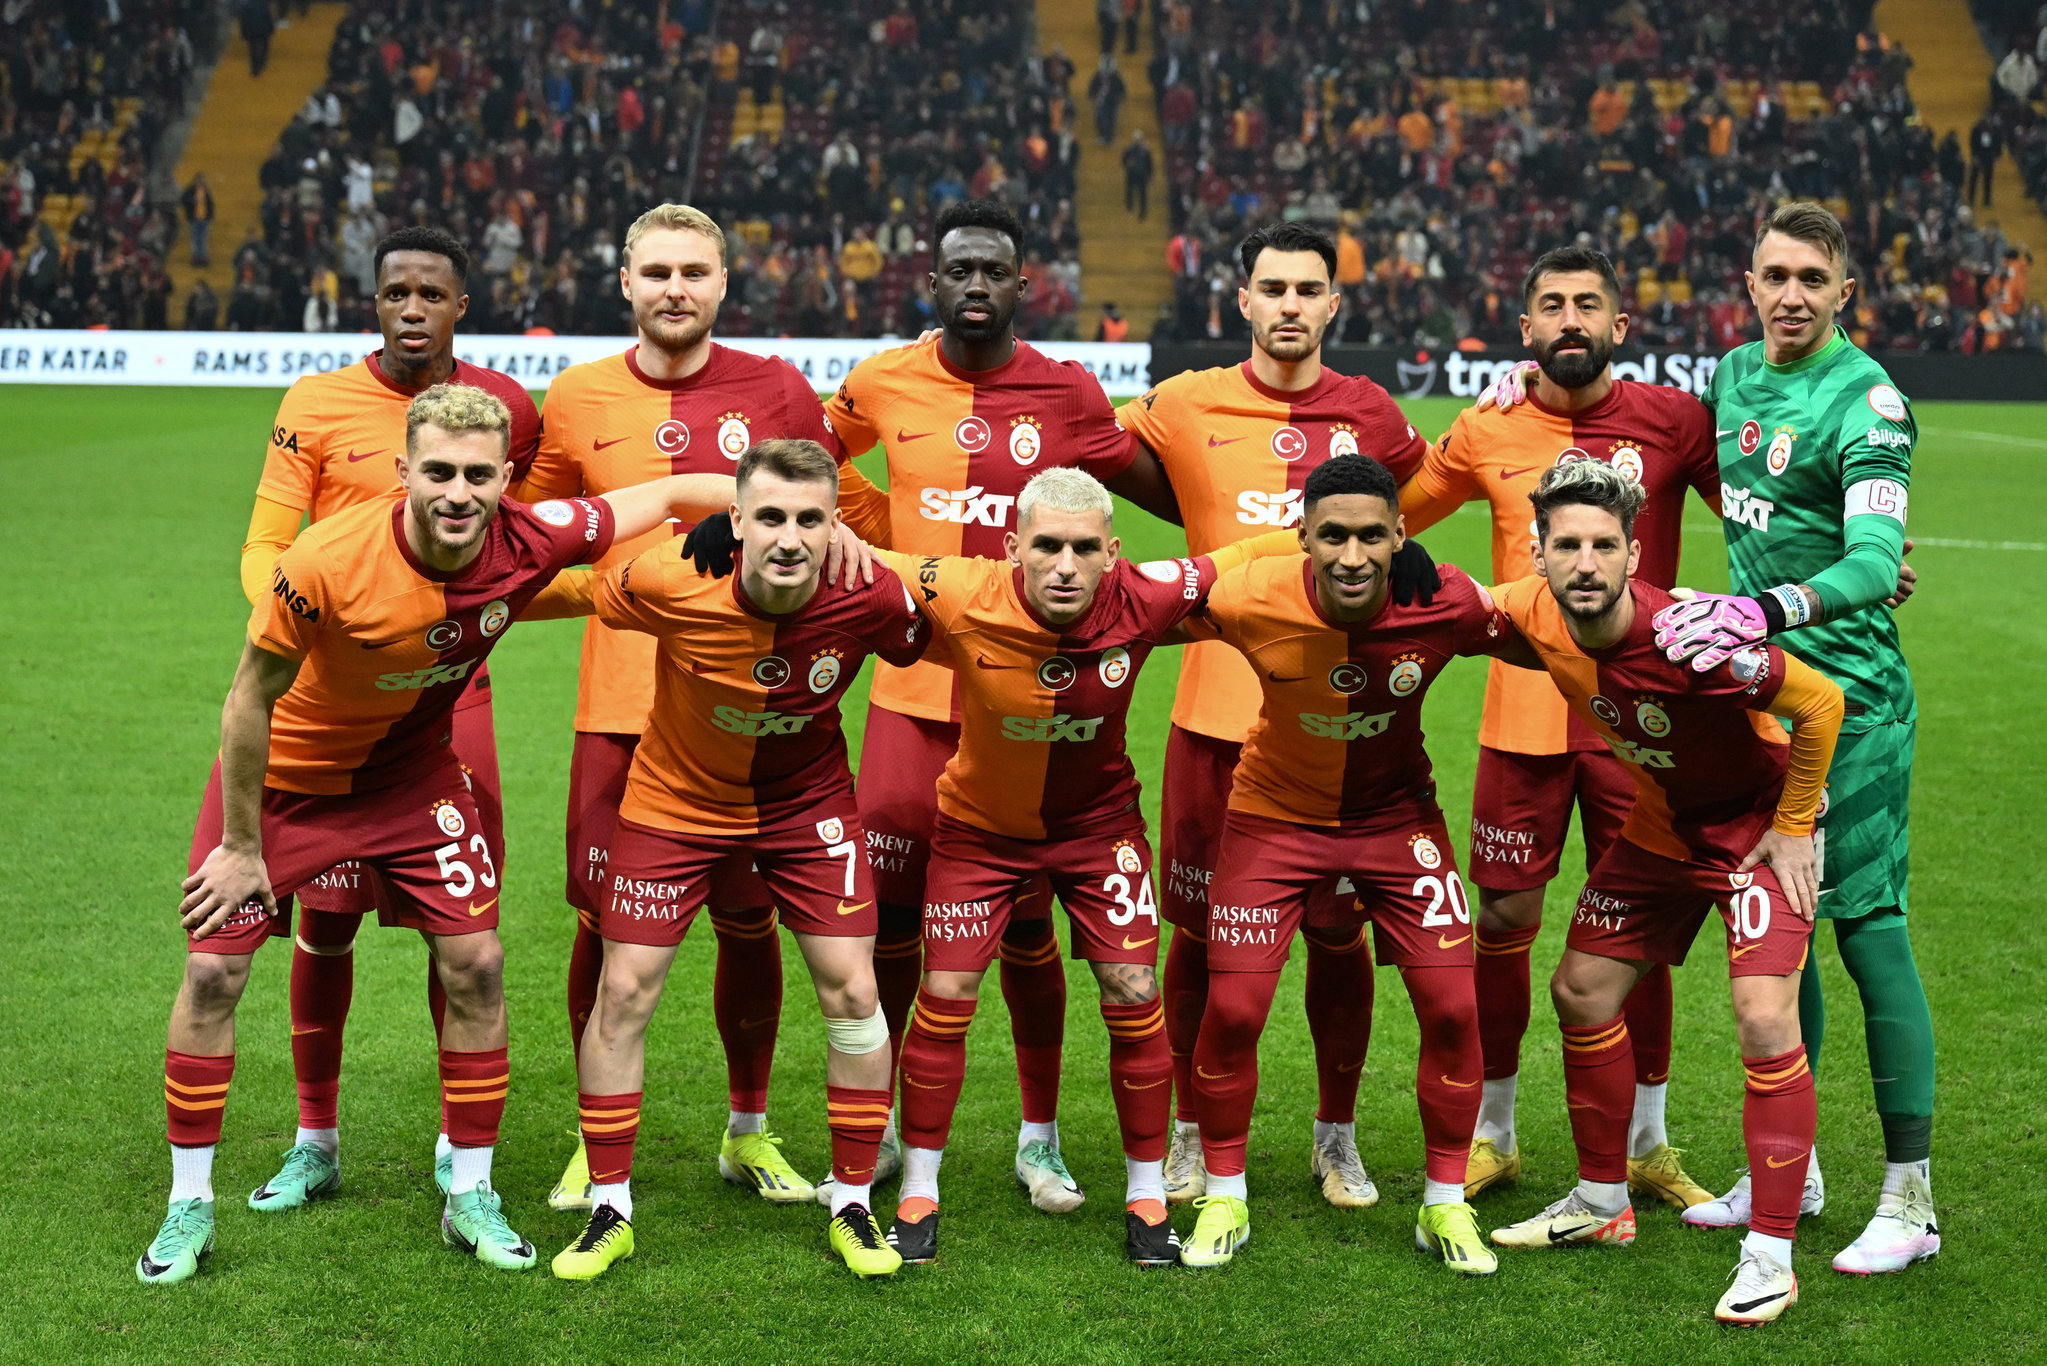 Transferdeki sessizlik bitiyor! Galatasaray’ın yeni yıldızı Borussia Dortmund’dan geliyor